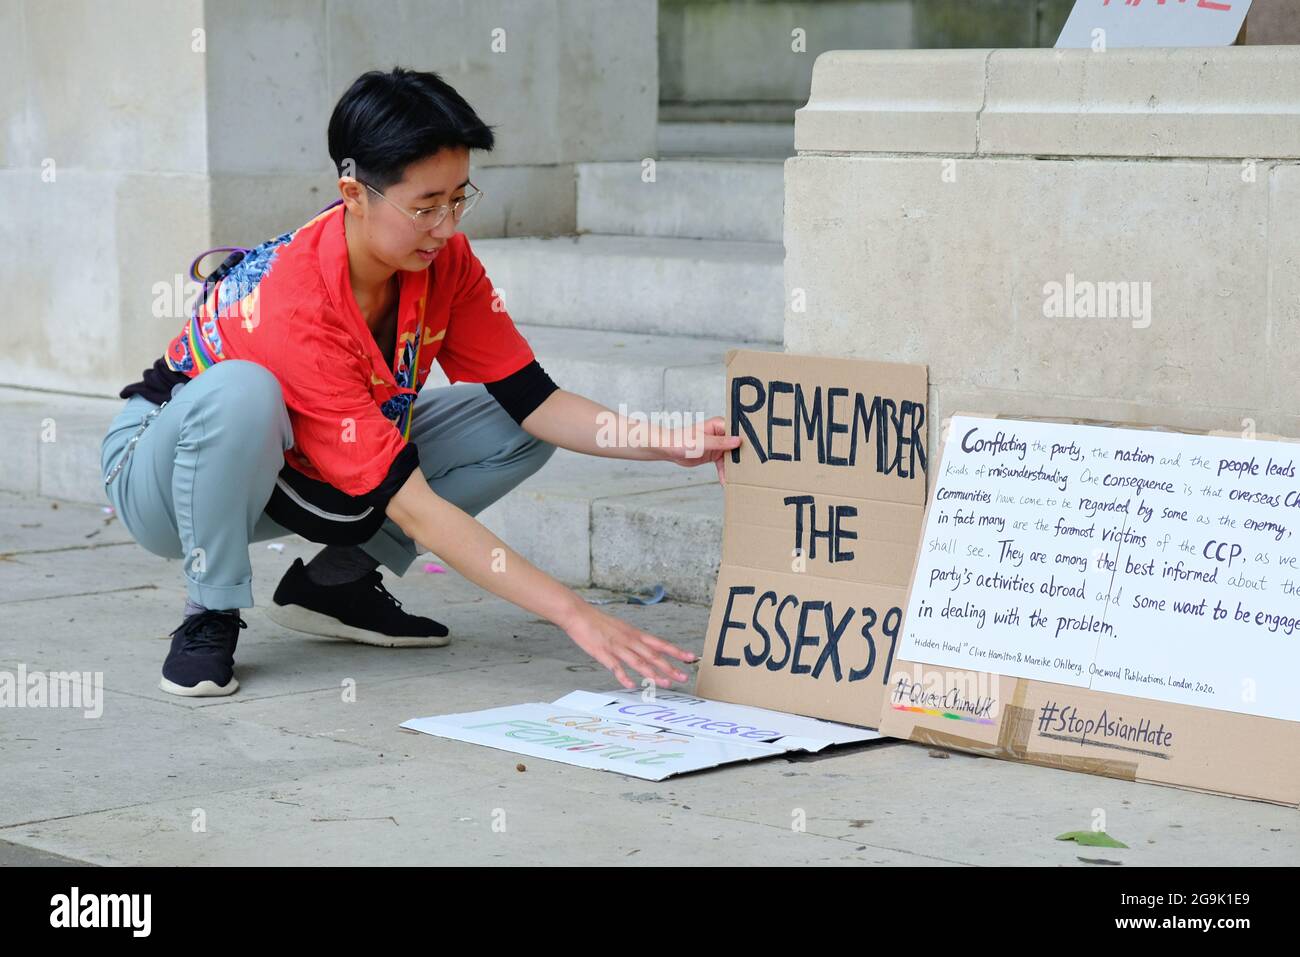 Protestler, der ein Plakat bei einer Stop Asian Hate-Kundgebung in London für die 39 vietnamesischen Migranten anpasst, die auf einem Lastwagen umkamen. Stockfoto